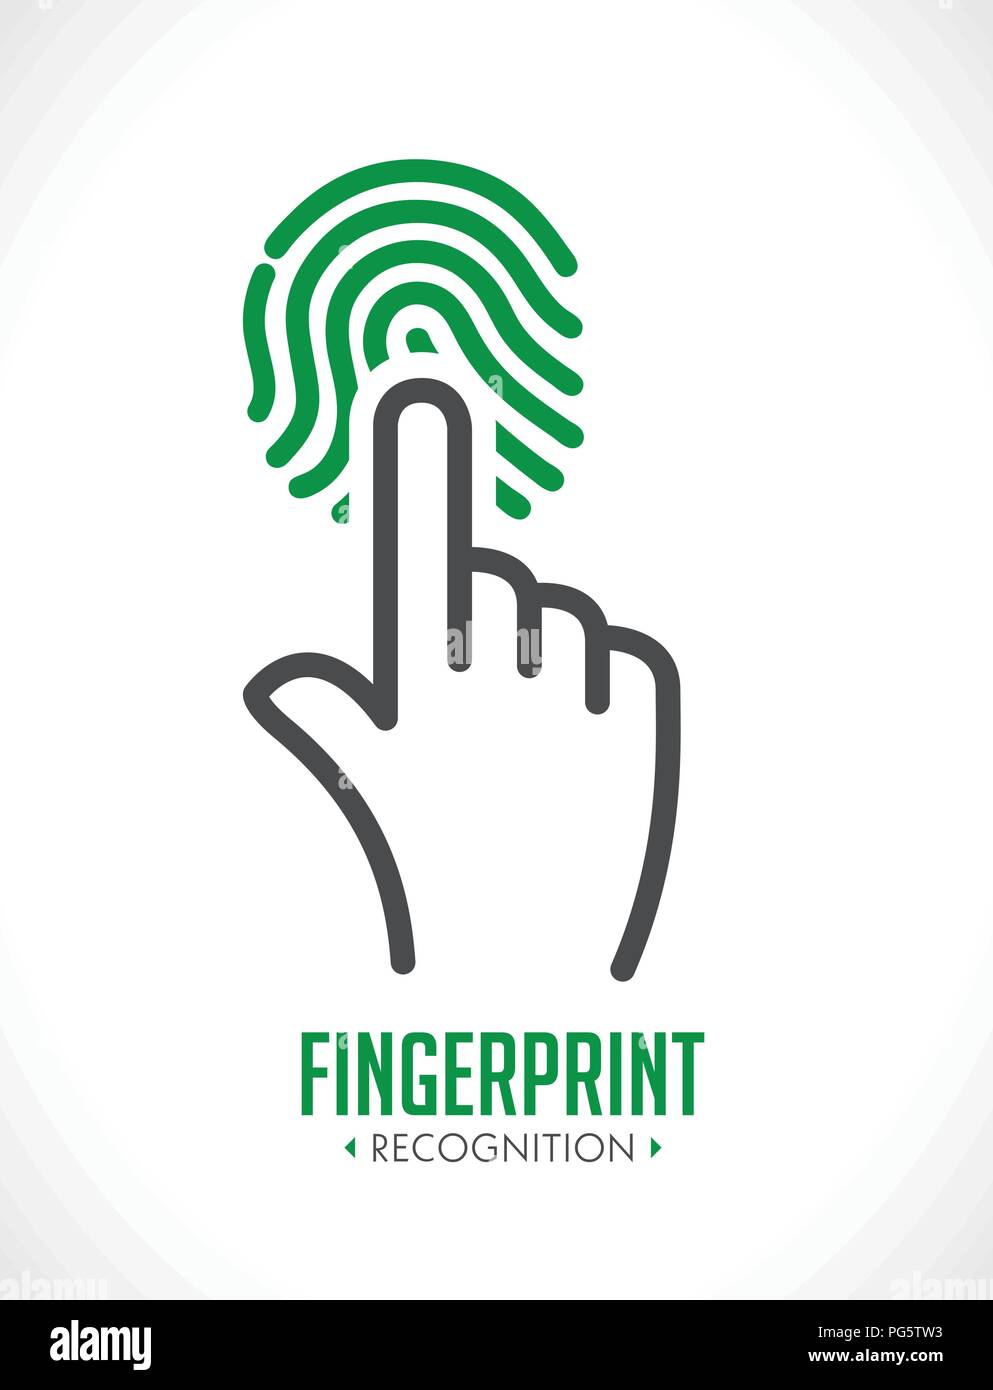 Logotipo - reconocimiento de huellas dactilares - Concepto de sistema de control de acceso biométrico Ilustración del Vector